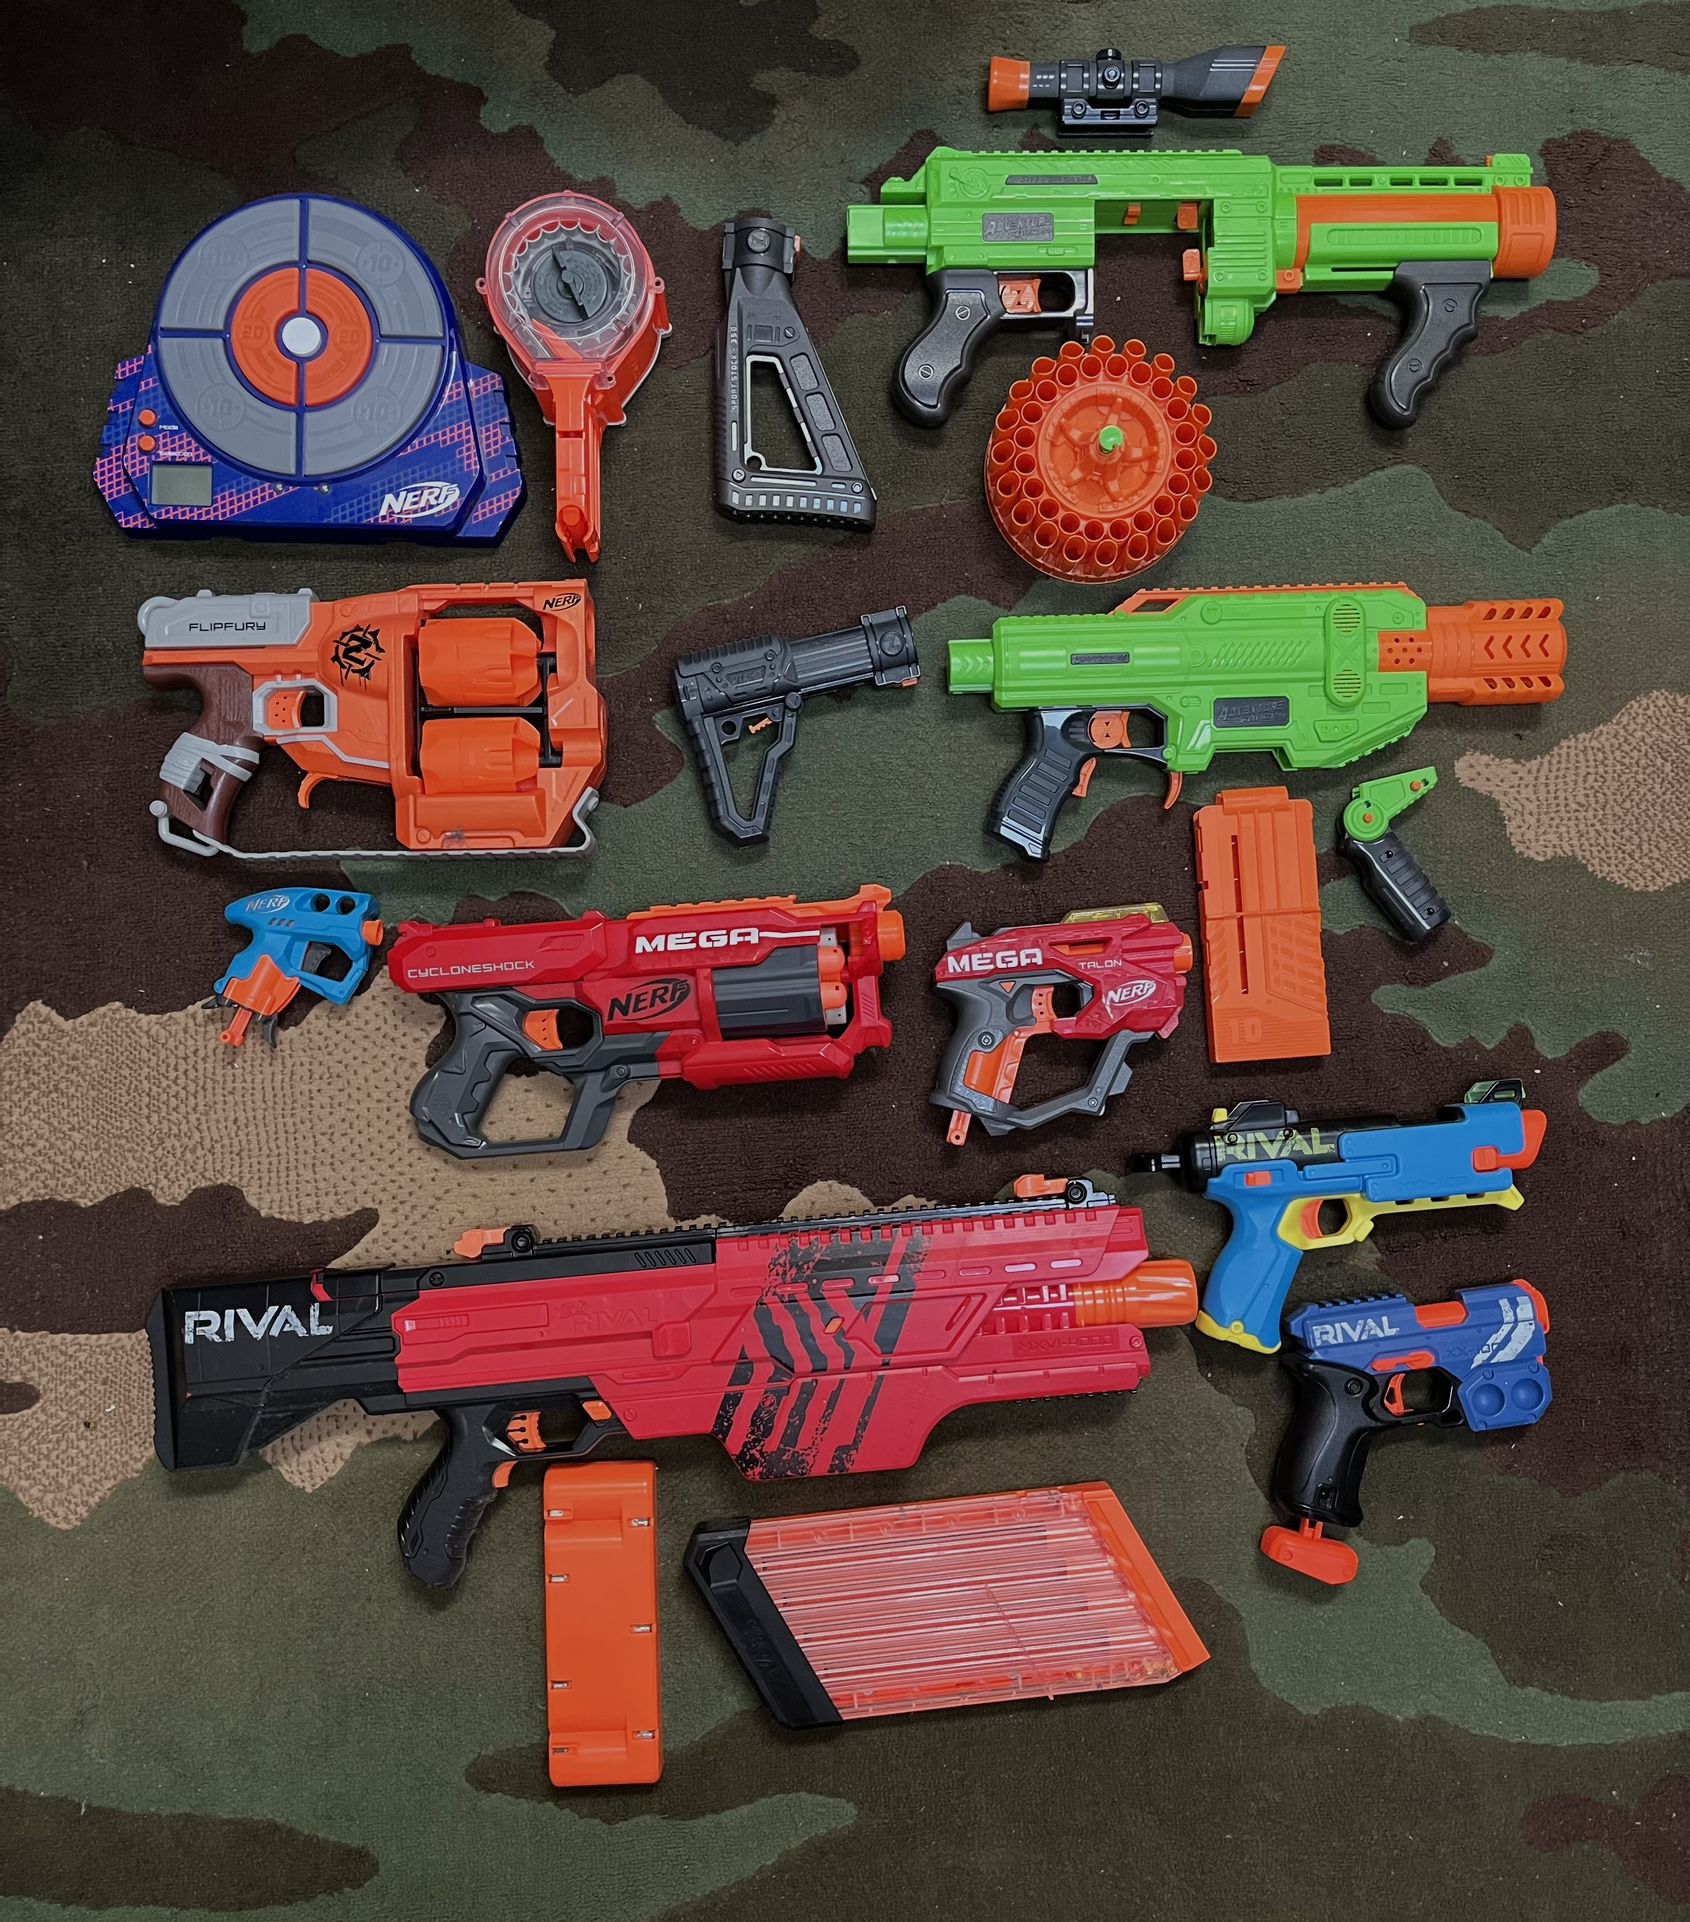 Nerd Gun Blasters And Attachments